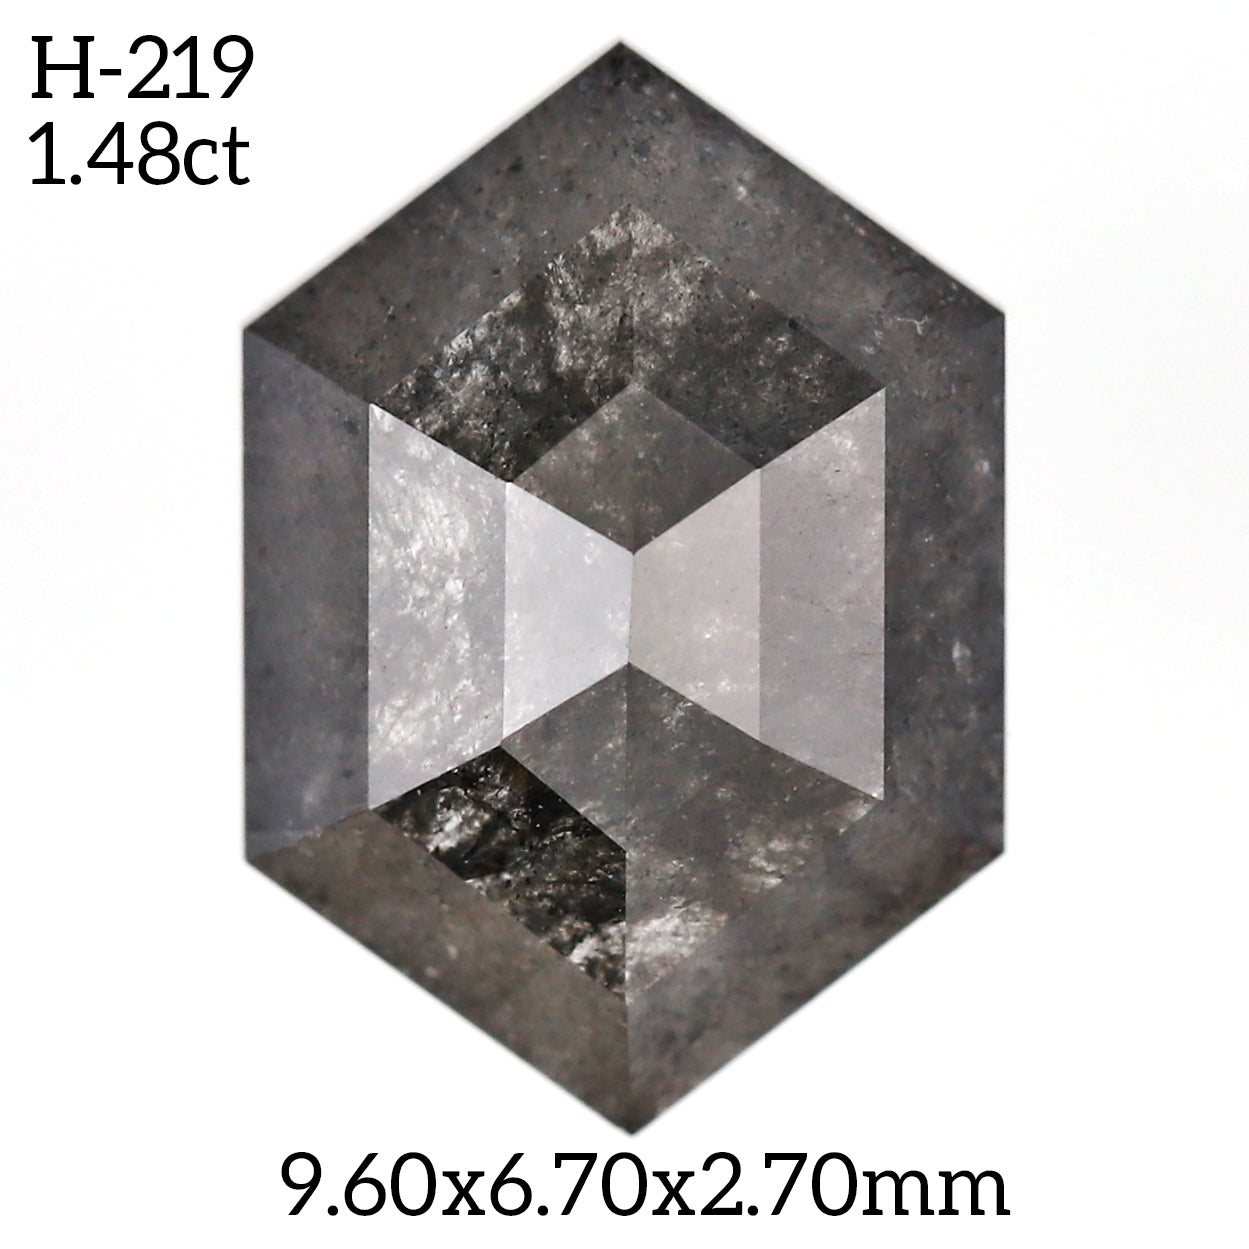 H219 - Salt and pepper hexagon diamond